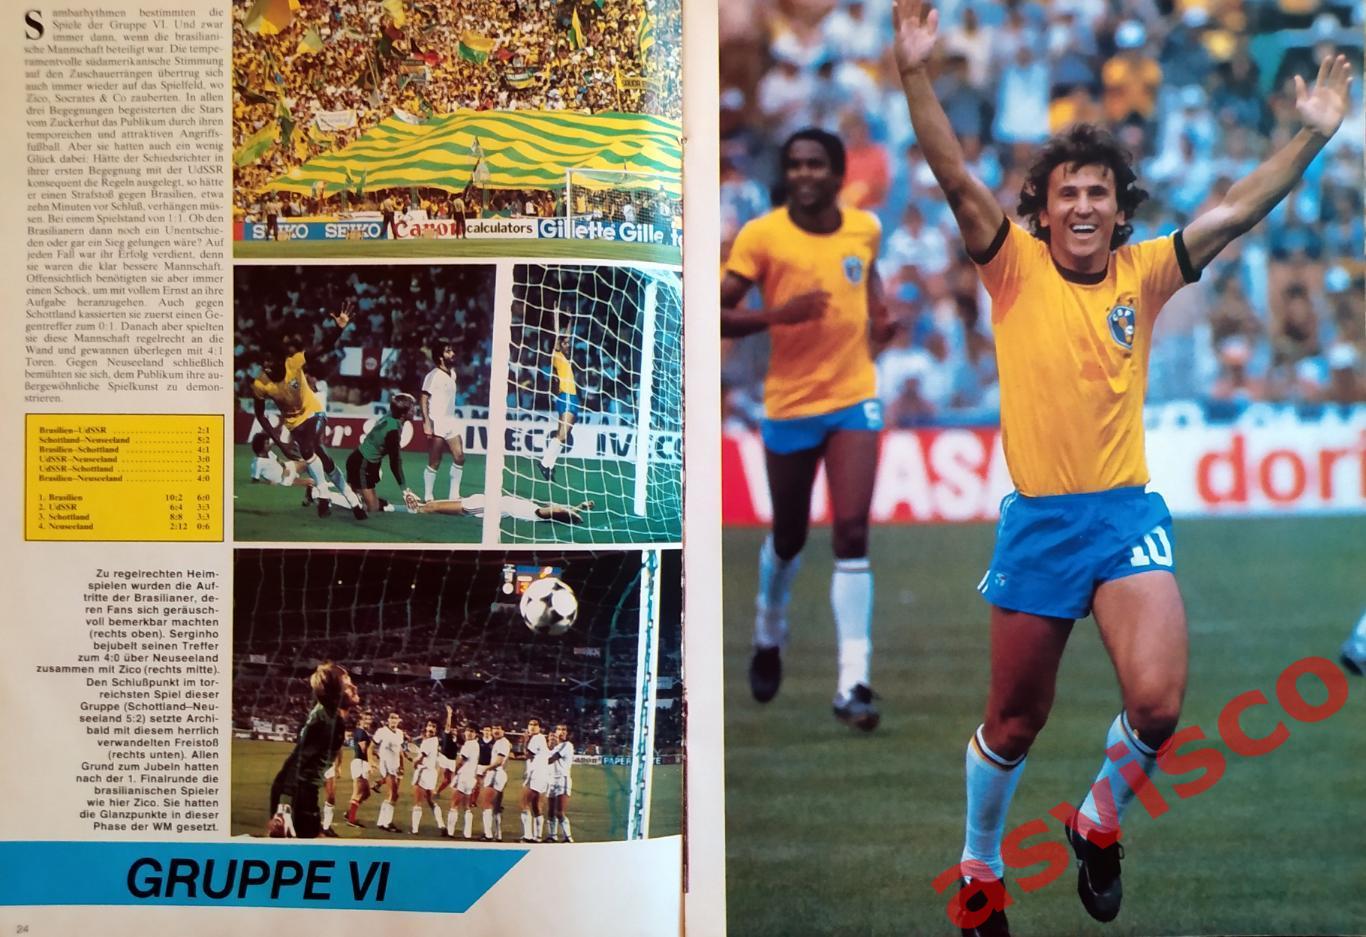 Чемпионат Мира по футболу в Испании 1982 года. Главные события чемпионата. 2